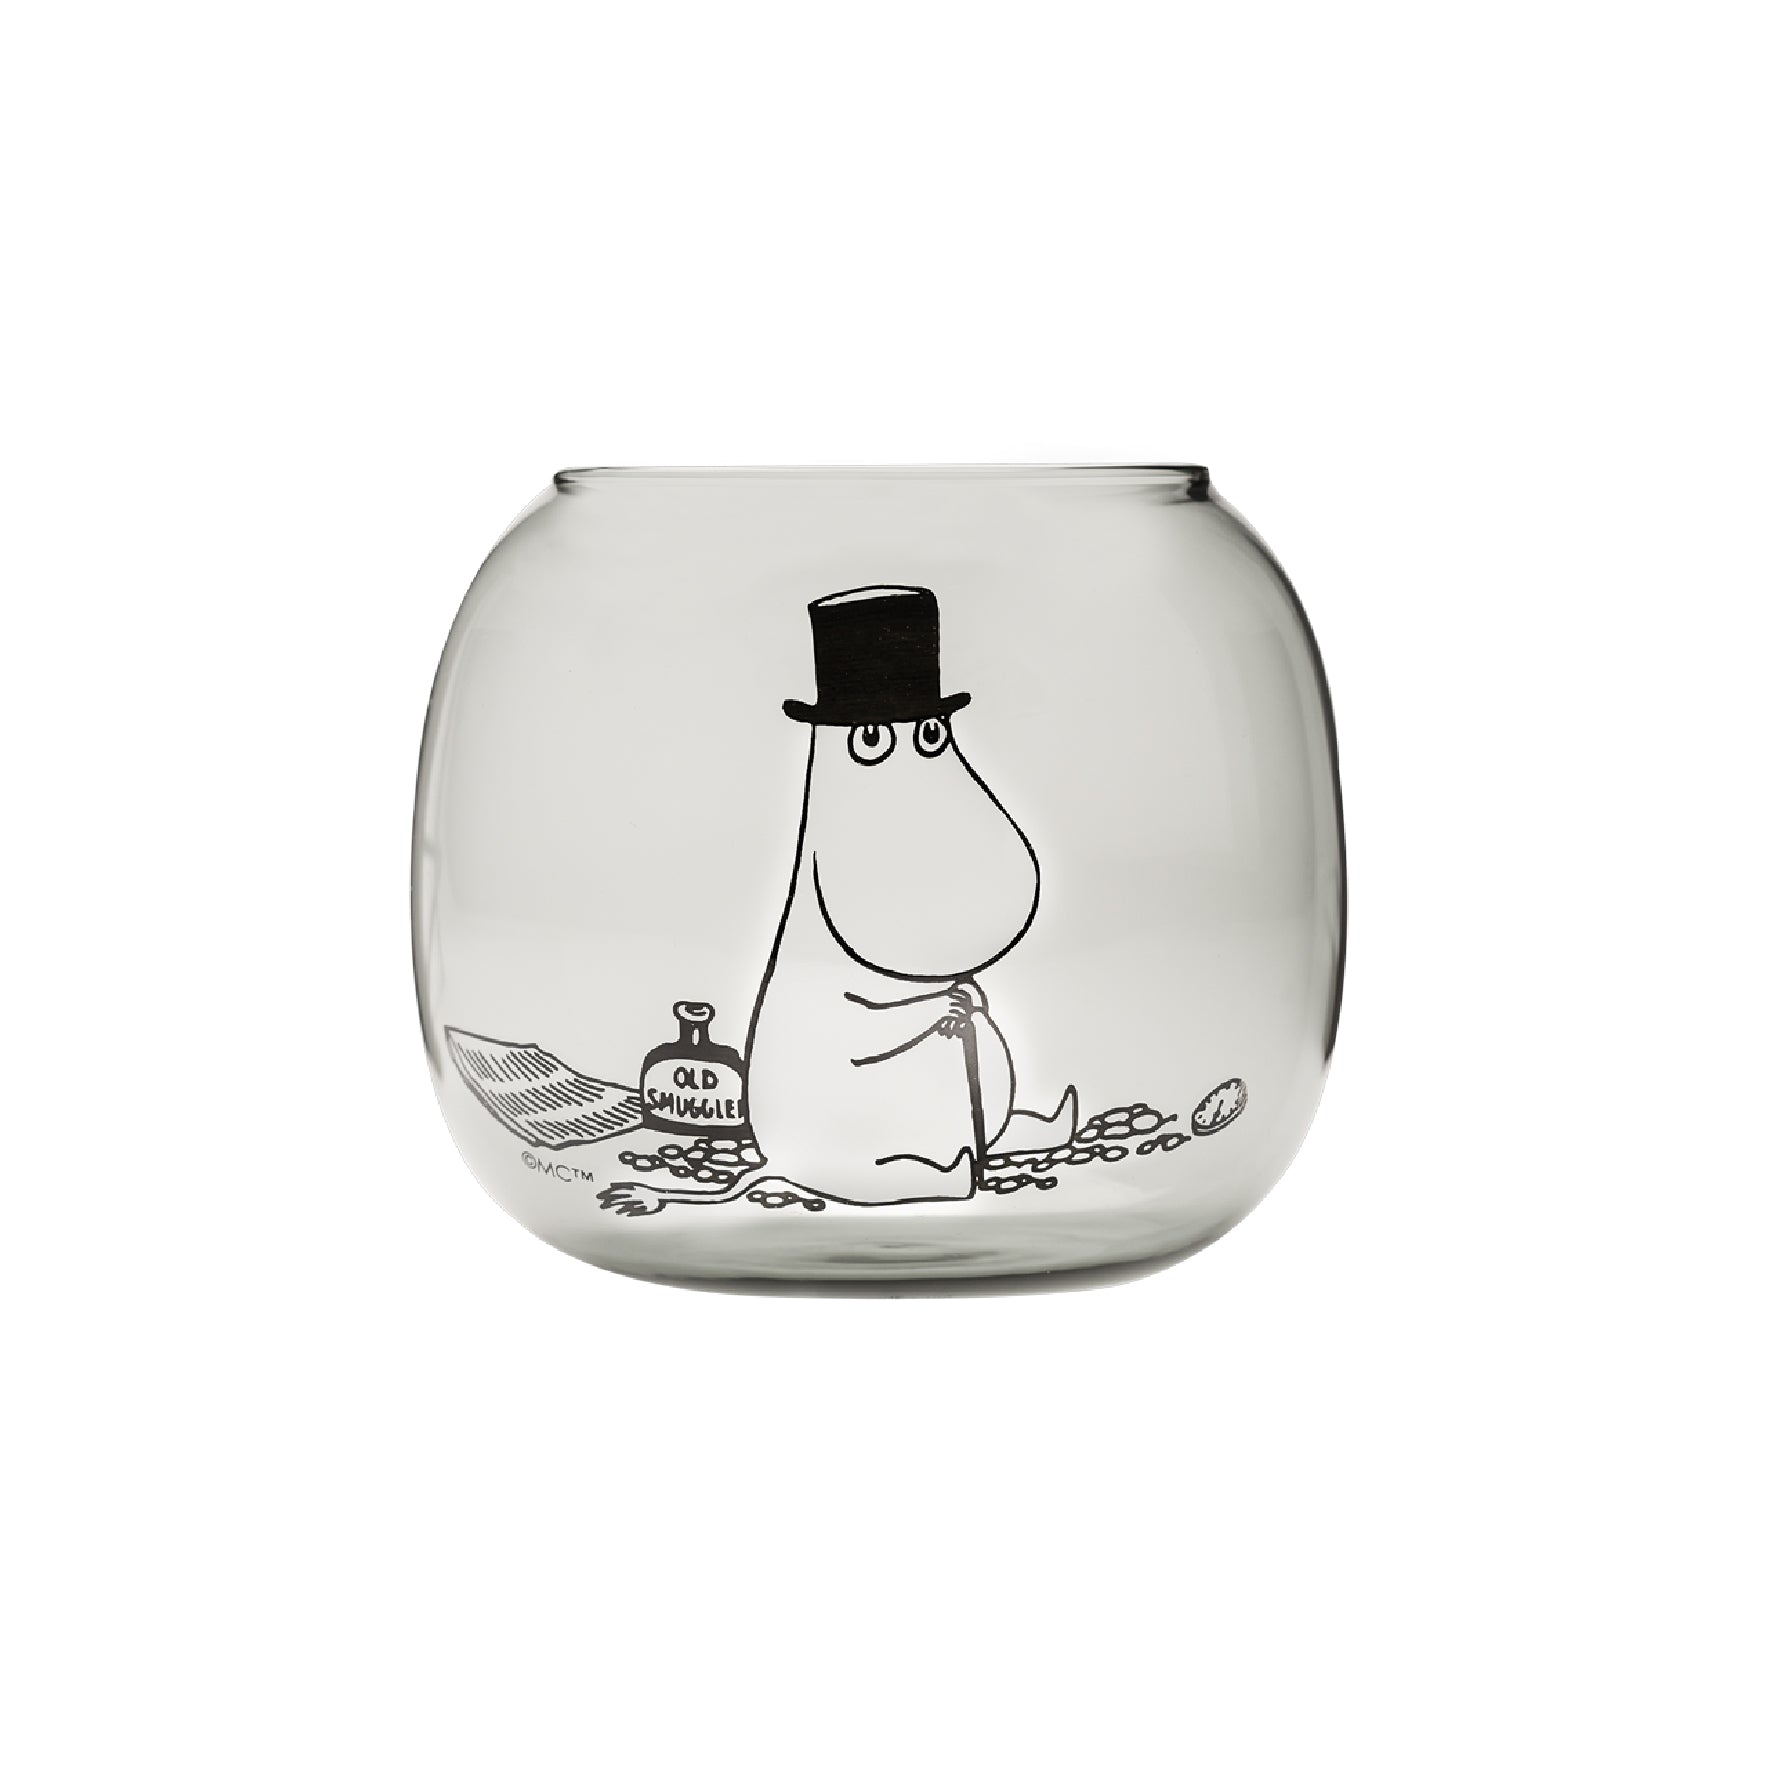 Moomin Candle Holder - Moominpapa 多功能小燭台